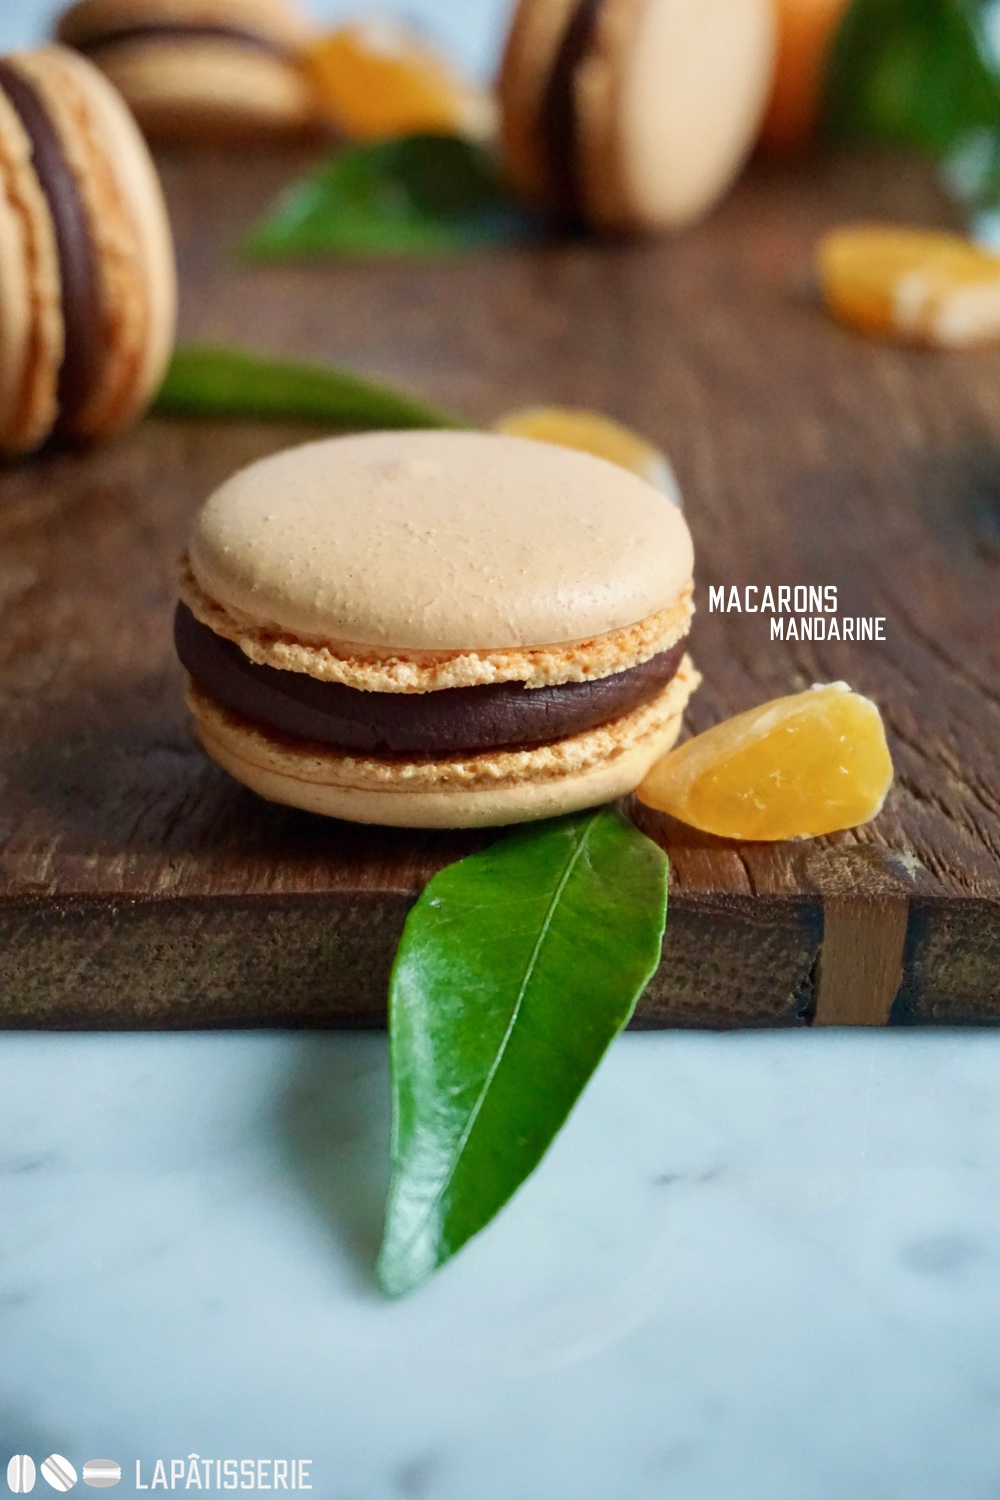 Macarons mit Mandarine und dunkler Schokolade. So farbenfroh kann der Winter sein.